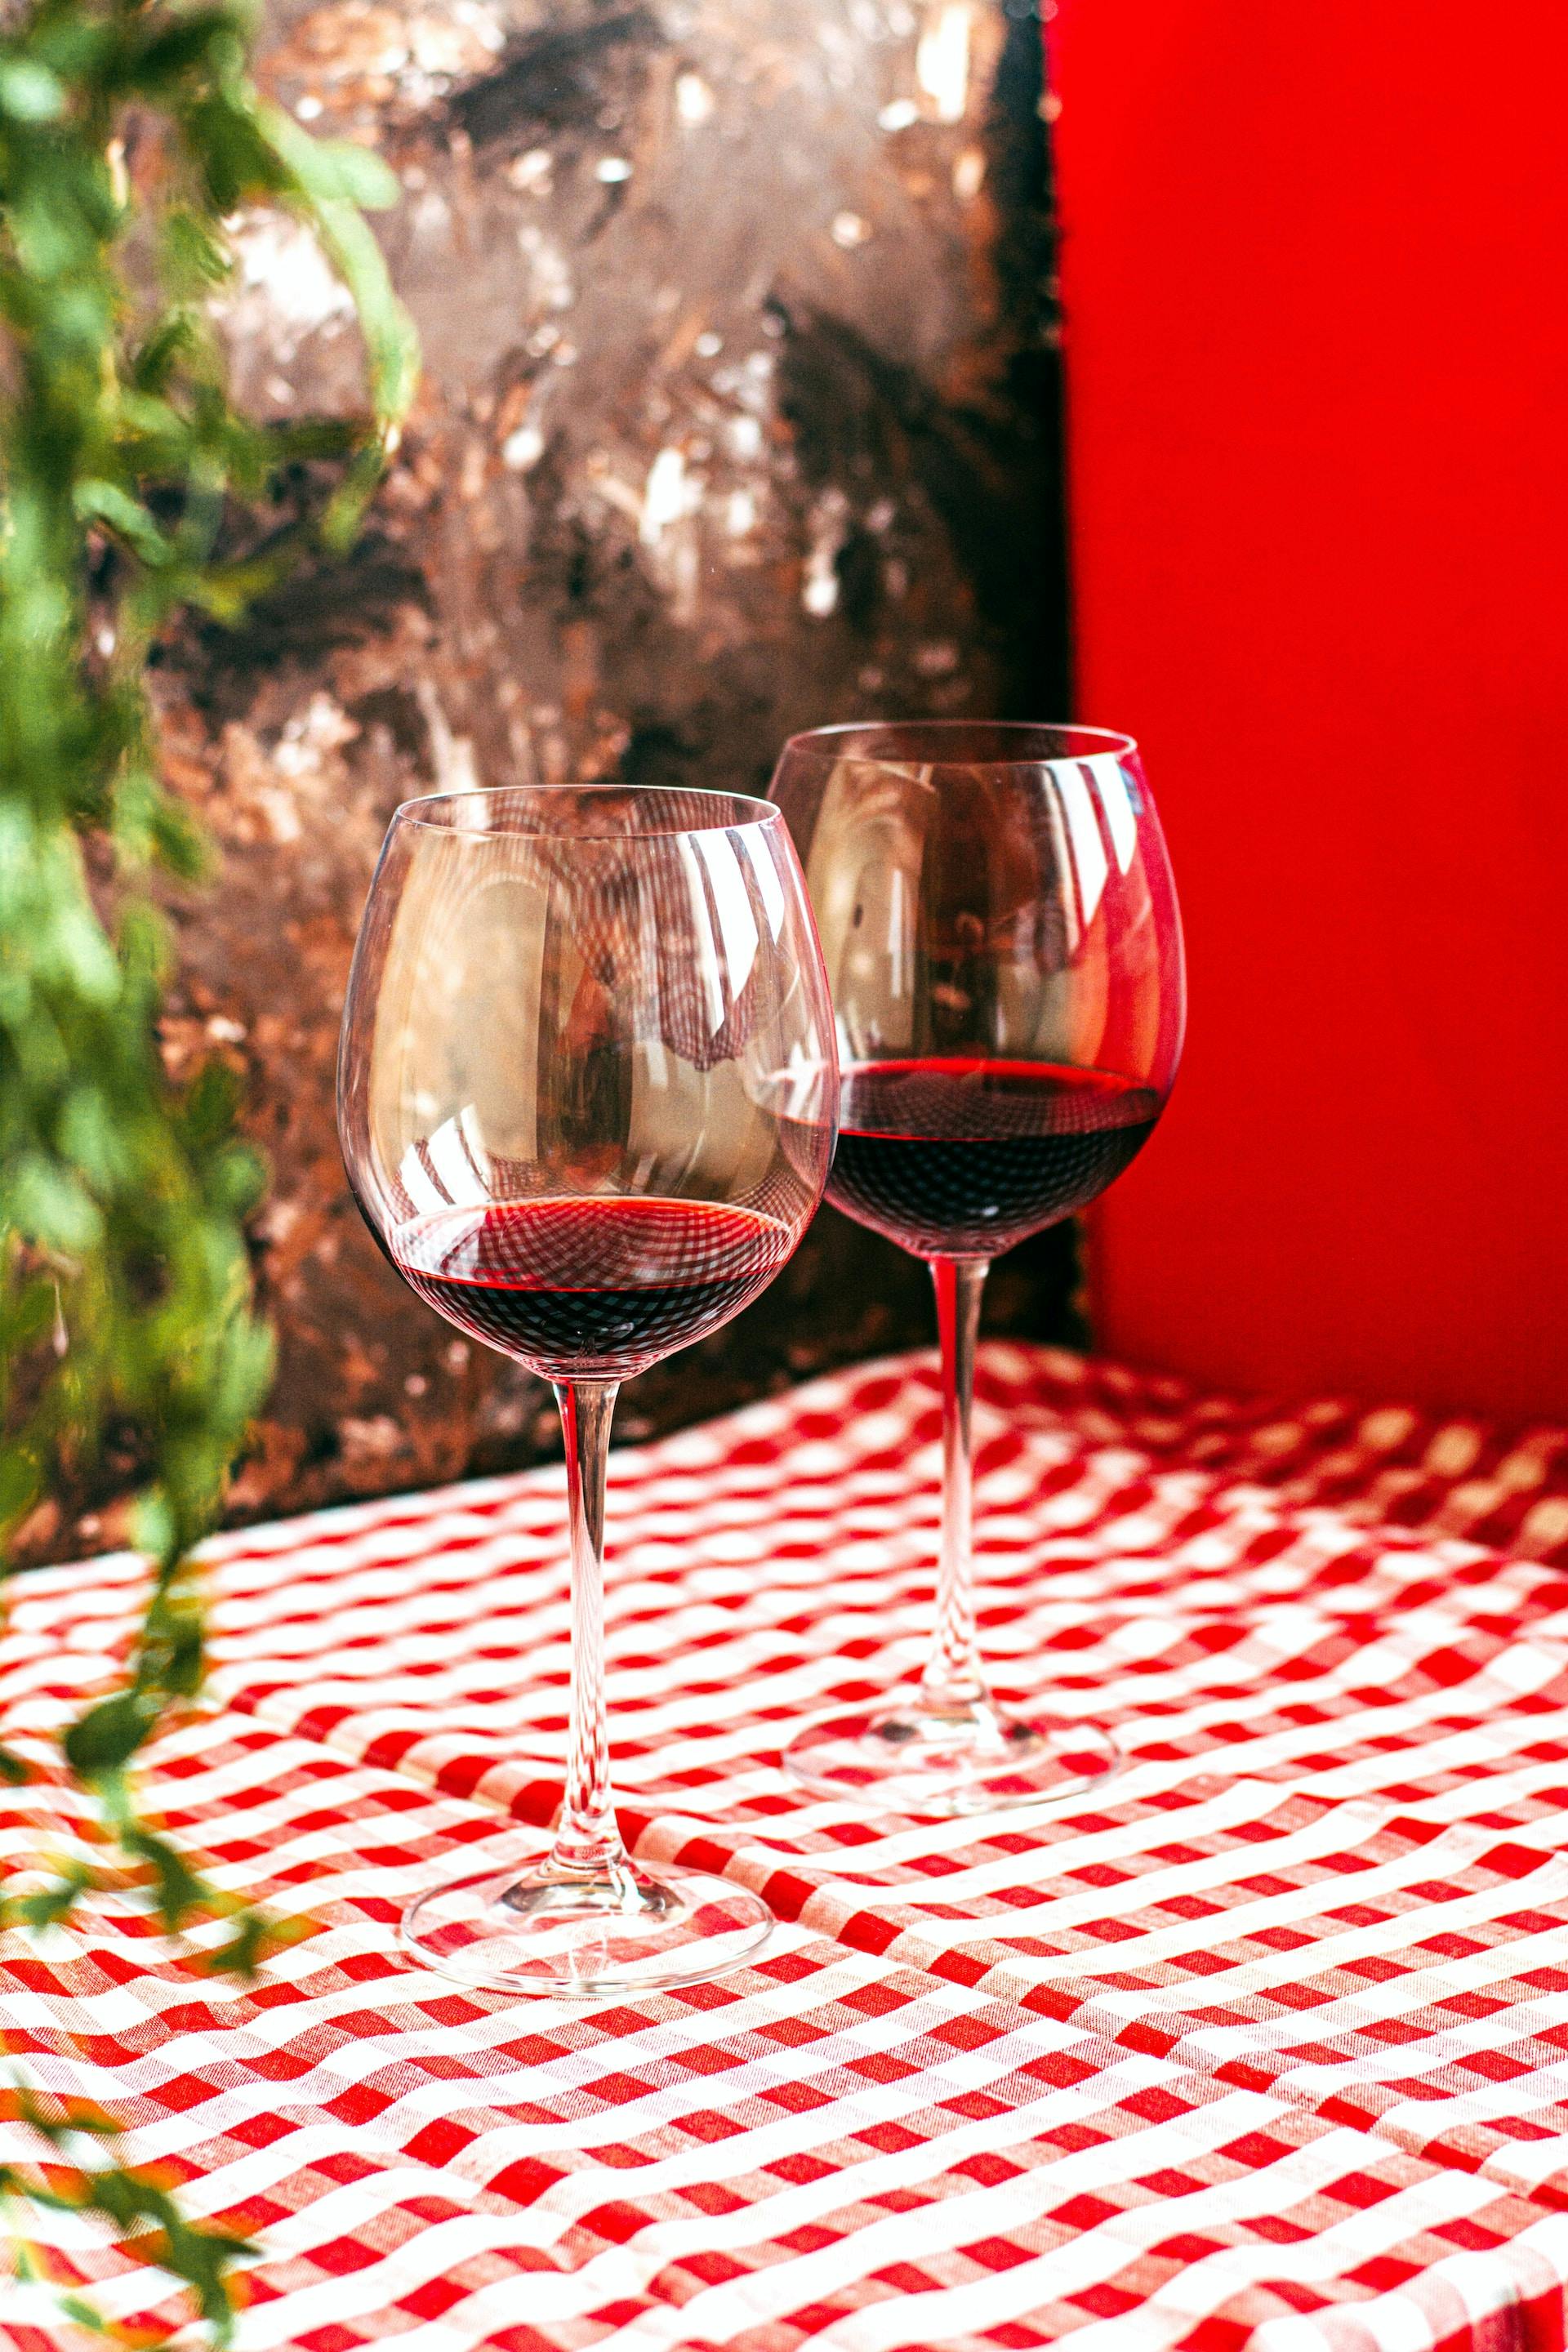 2 Weingläser mit roter Flüssigkeit auf rot weiß karierten Tischdecke